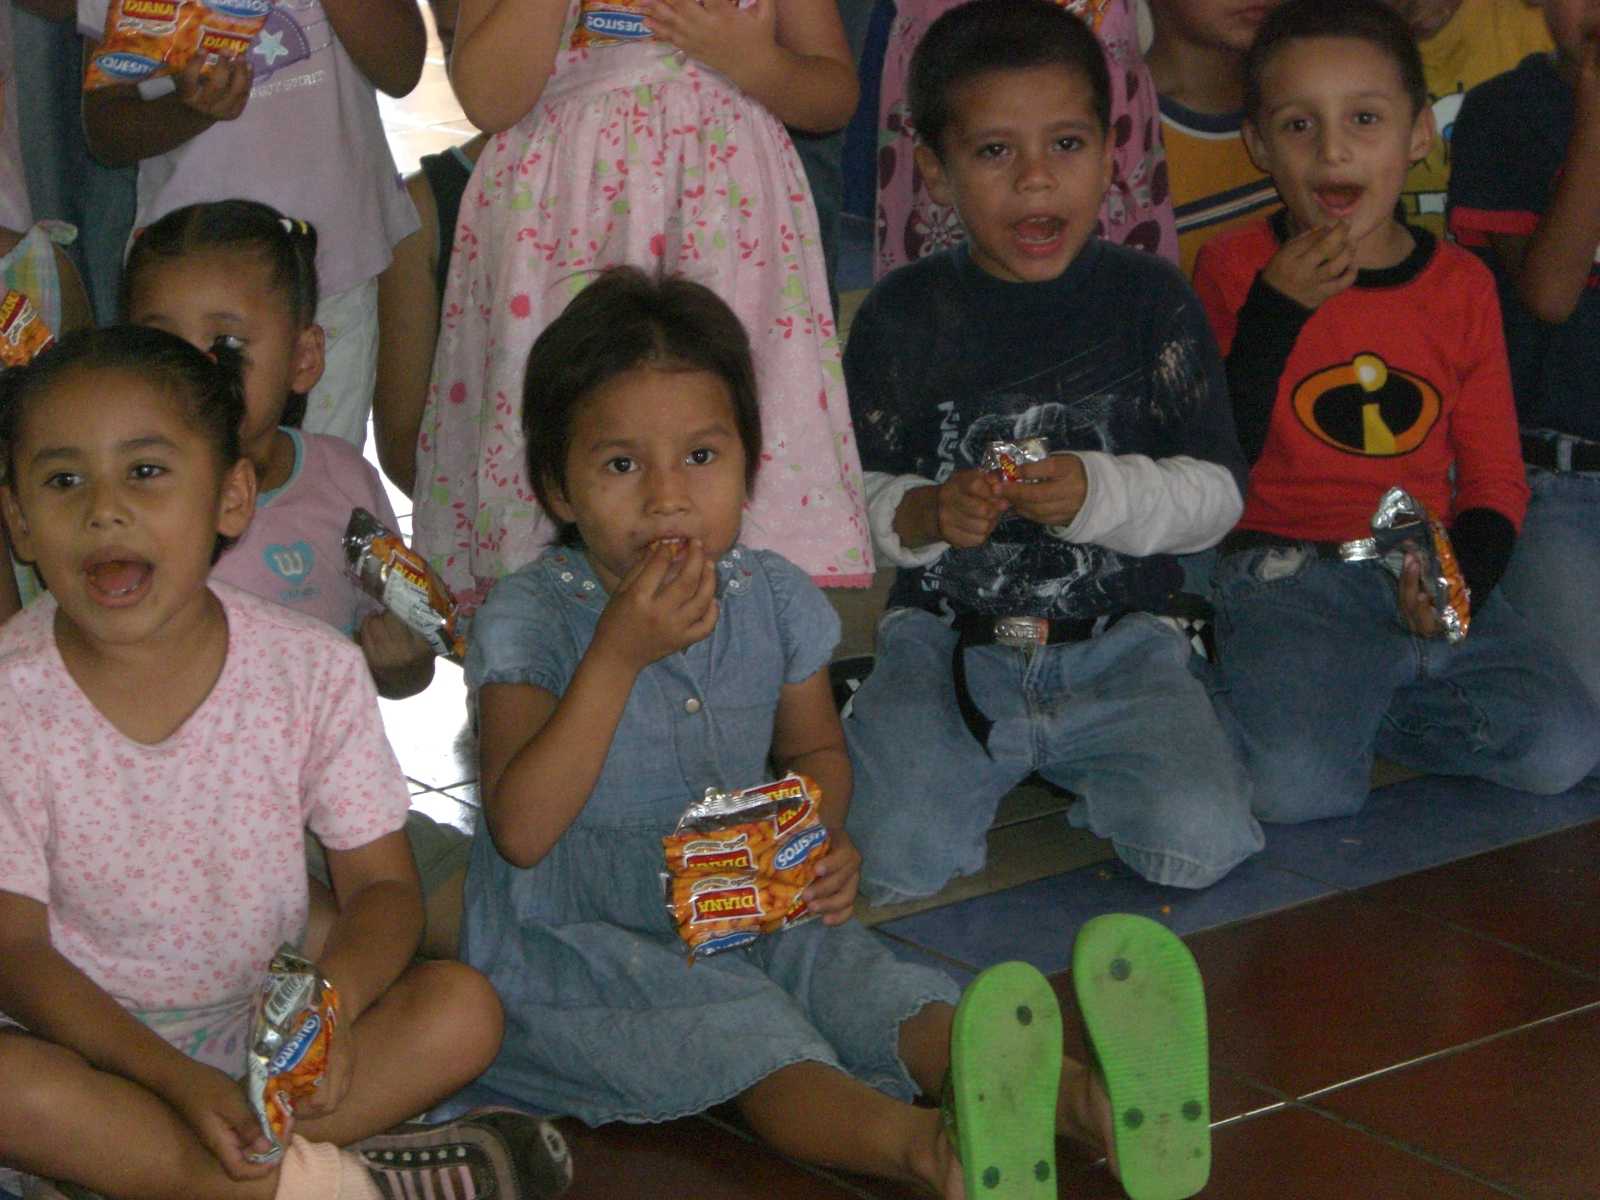 Project NPH - Nuestros Pequeños Hermanos in El Salvador